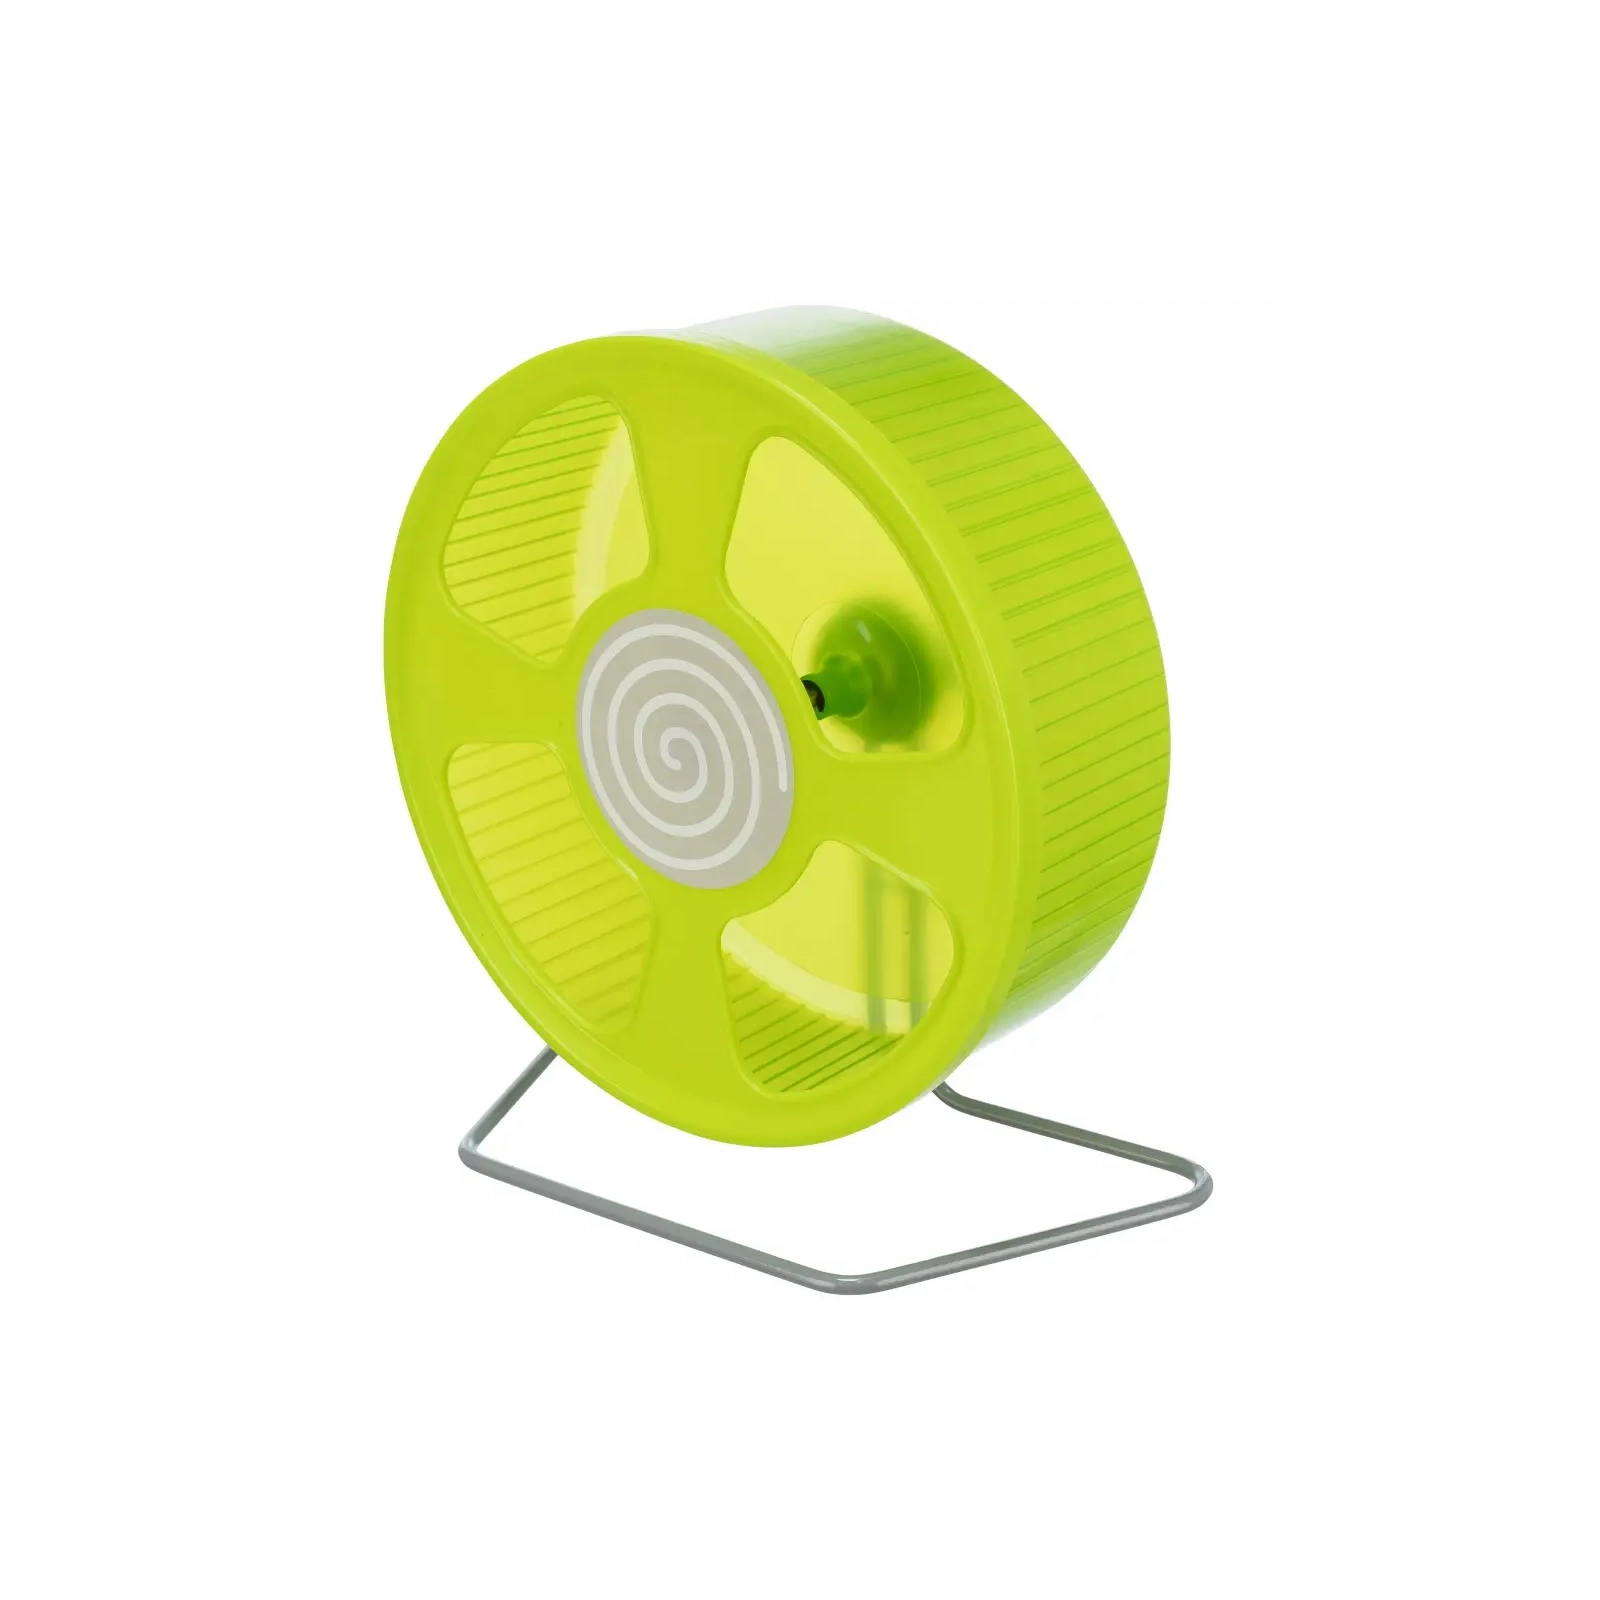 Игрушка для грызунов Trixie Беговое колесо на подставке d:28 см (цвета в ассортименте) (4047974610114)